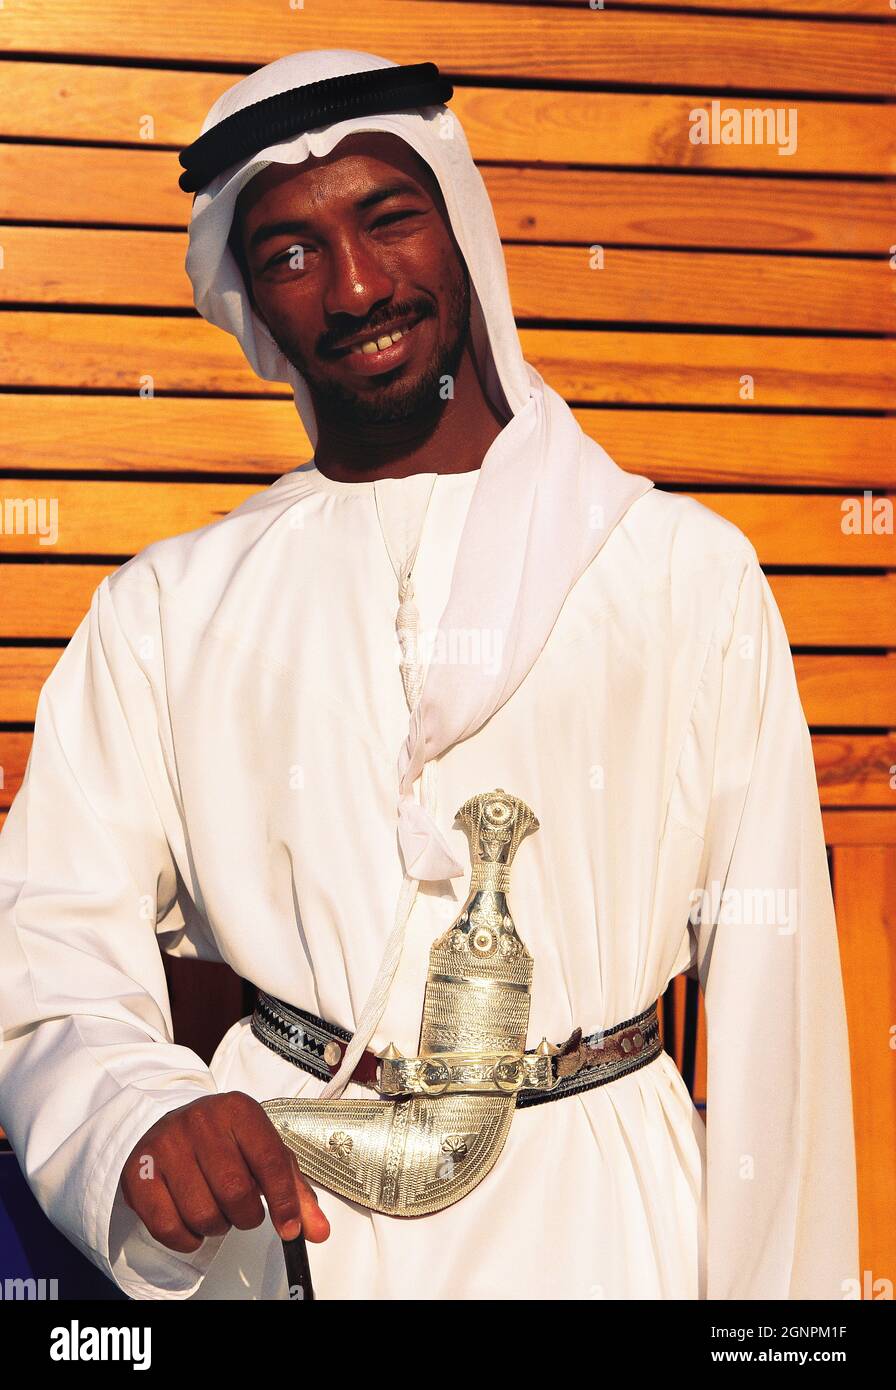 Arab robes immagini e fotografie stock ad alta risoluzione - Alamy